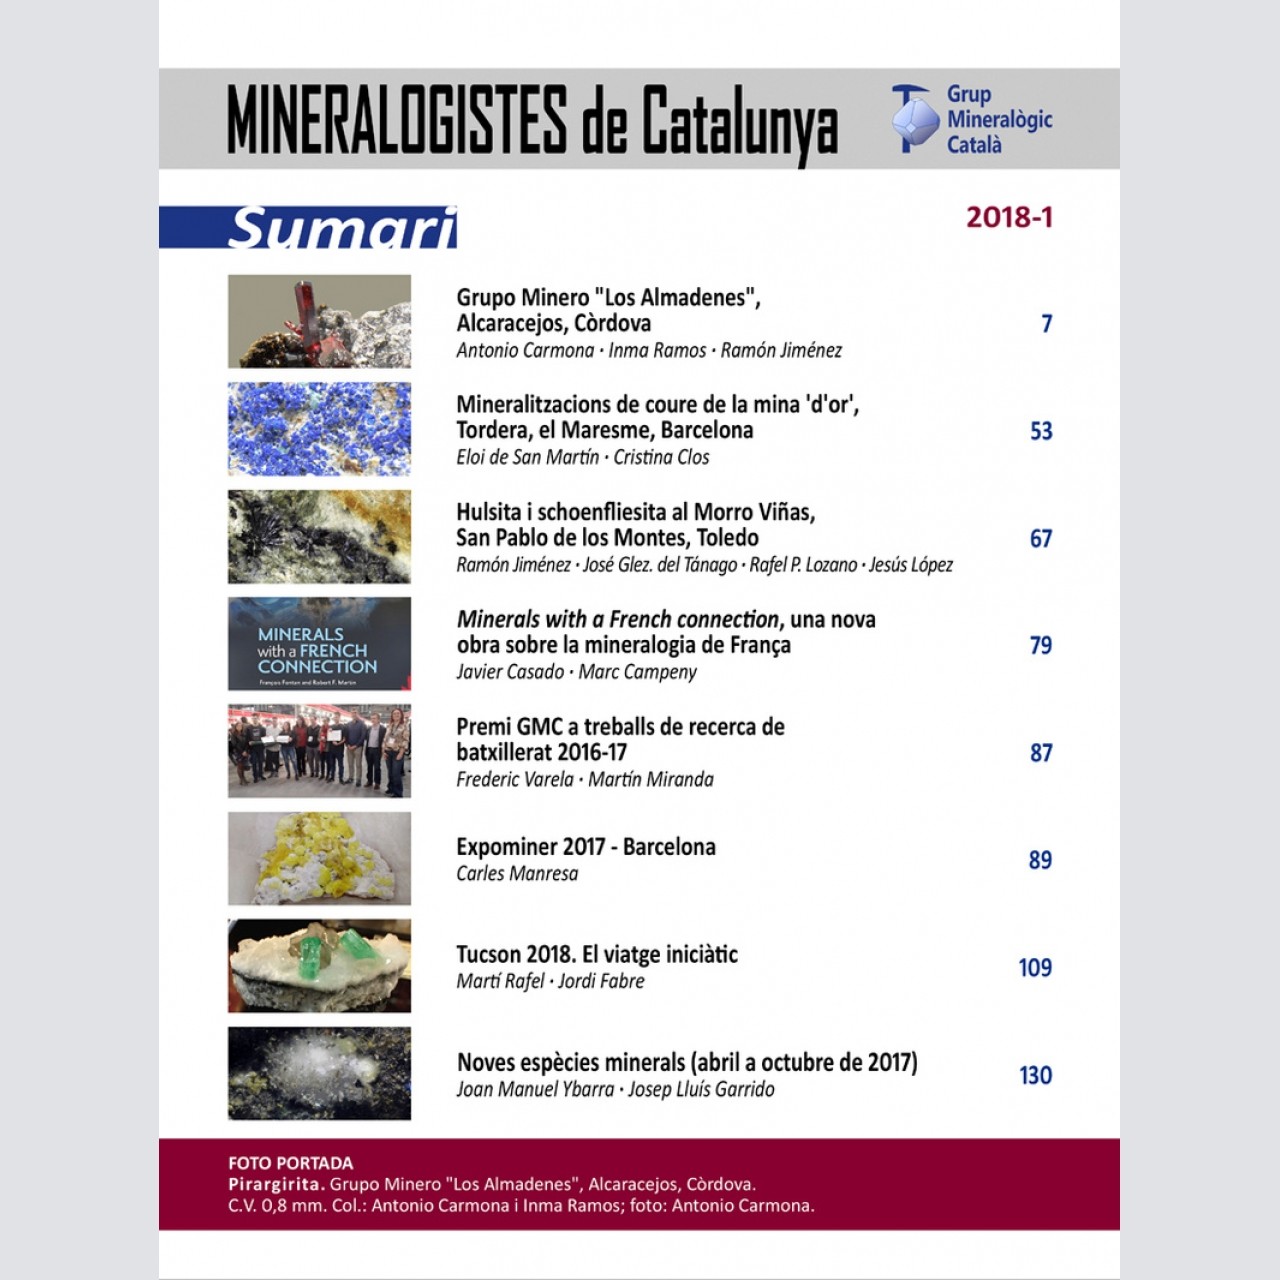 Mineralogistes de Catalunya (2018-1)